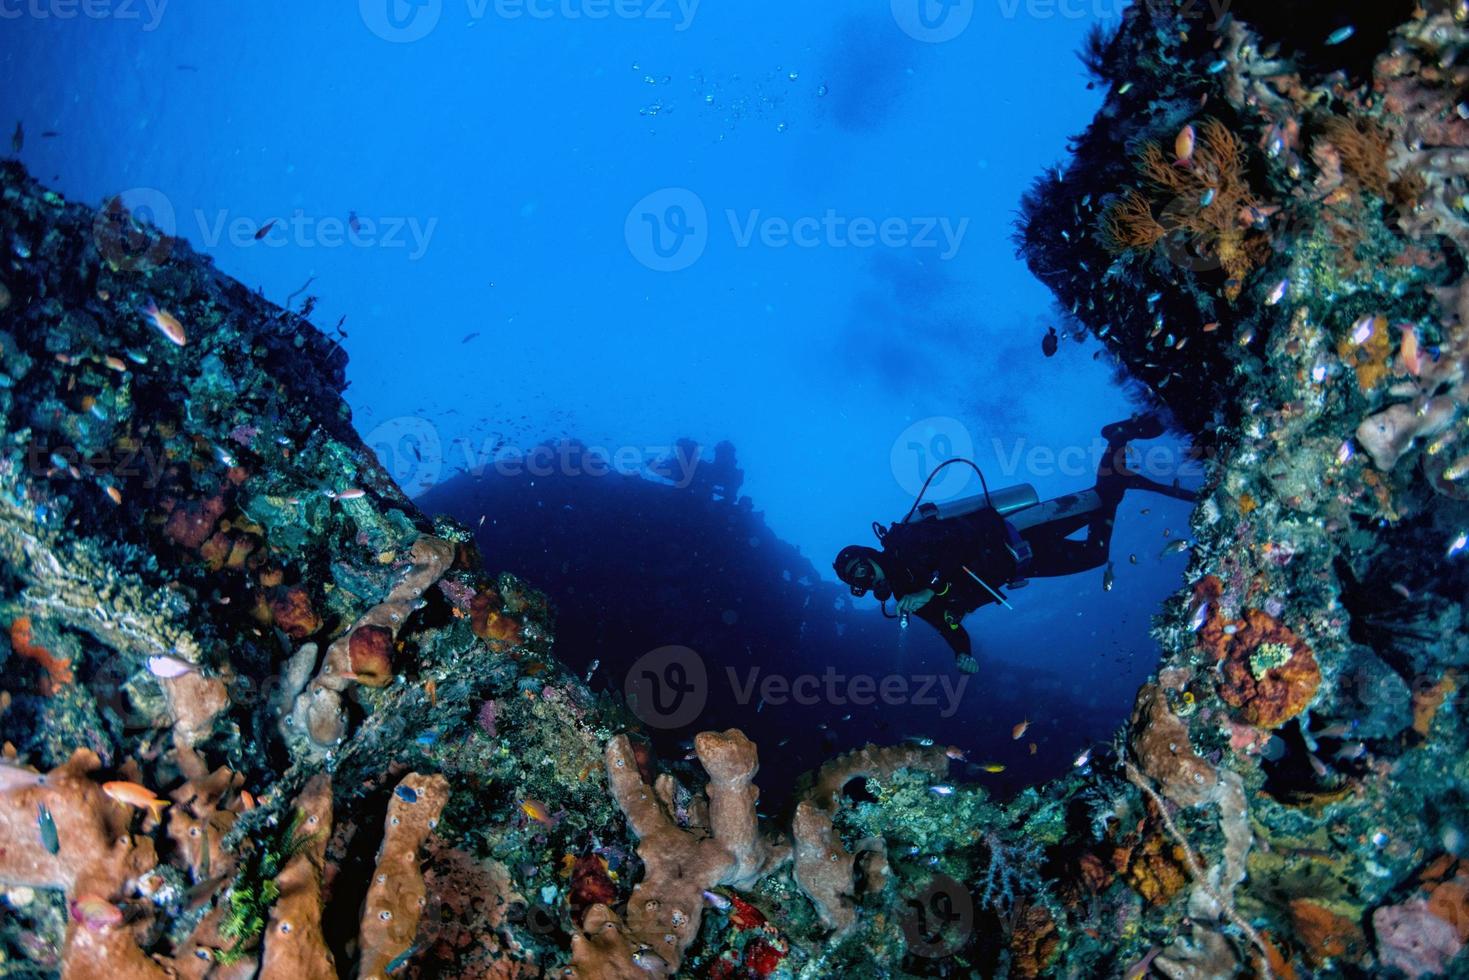 Taucher unter Wasser in der Nähe von Riesenschwamm im Ozean foto